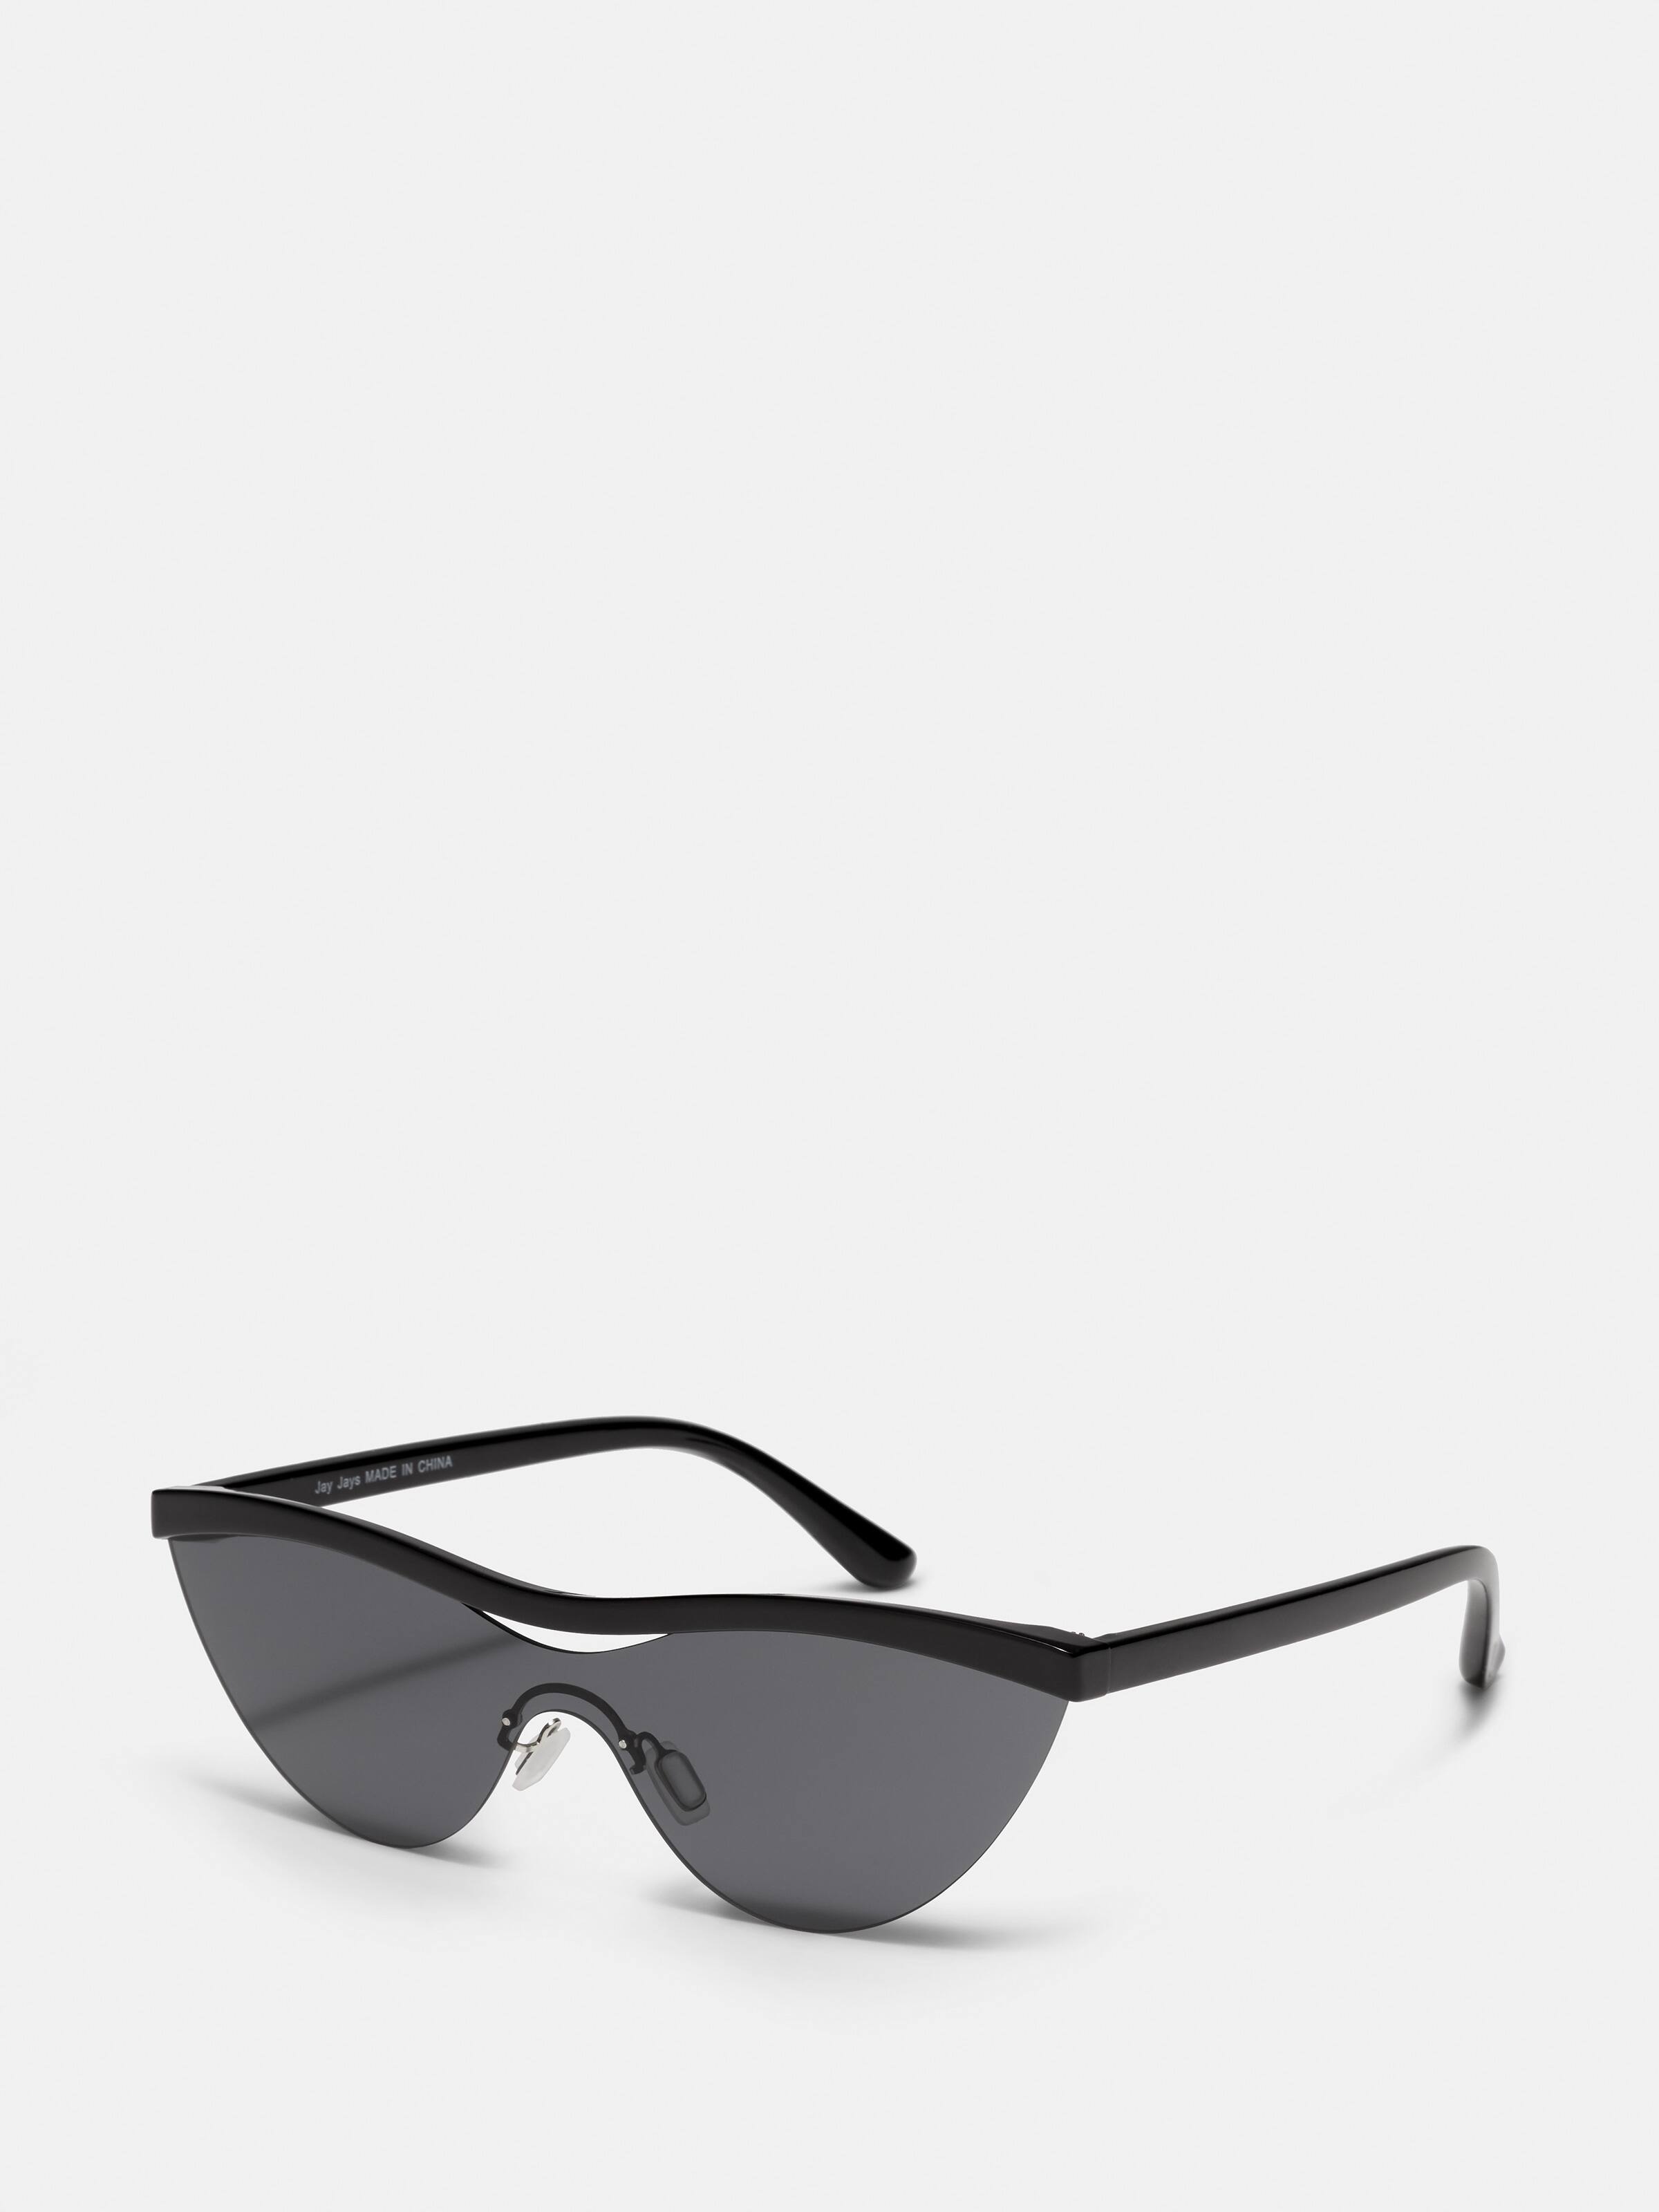 Girls Sunglasses 2 Pairs For $25